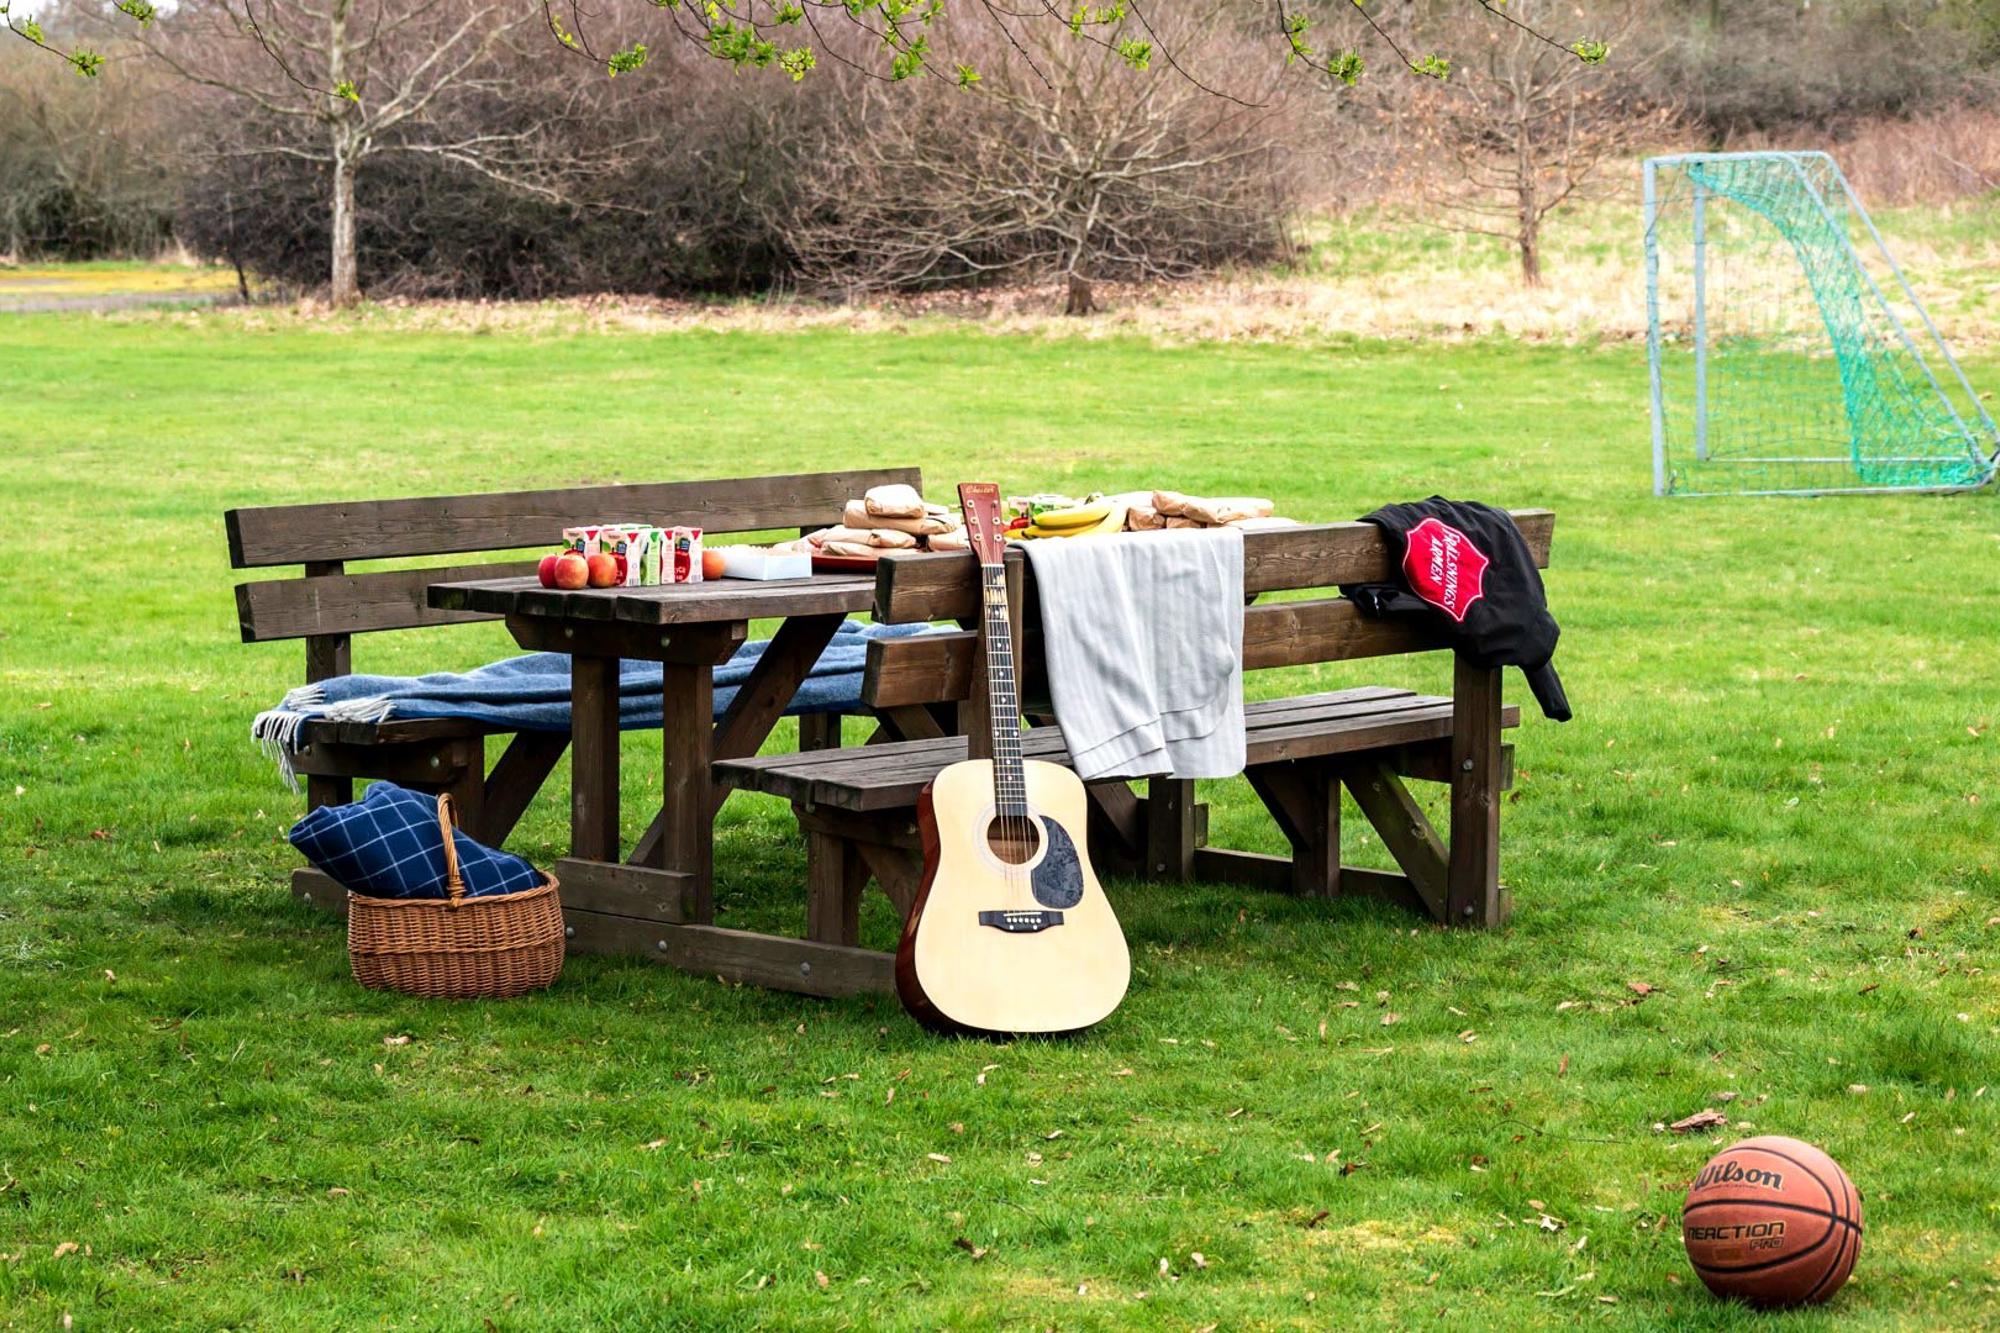 Ett picknickbord med smörgåsar, festis, filtar, en gitarr, en boll och ett fotbollsmål i bakgrunden. En jacka med Frälsningsarméns sköld ligger på bänken